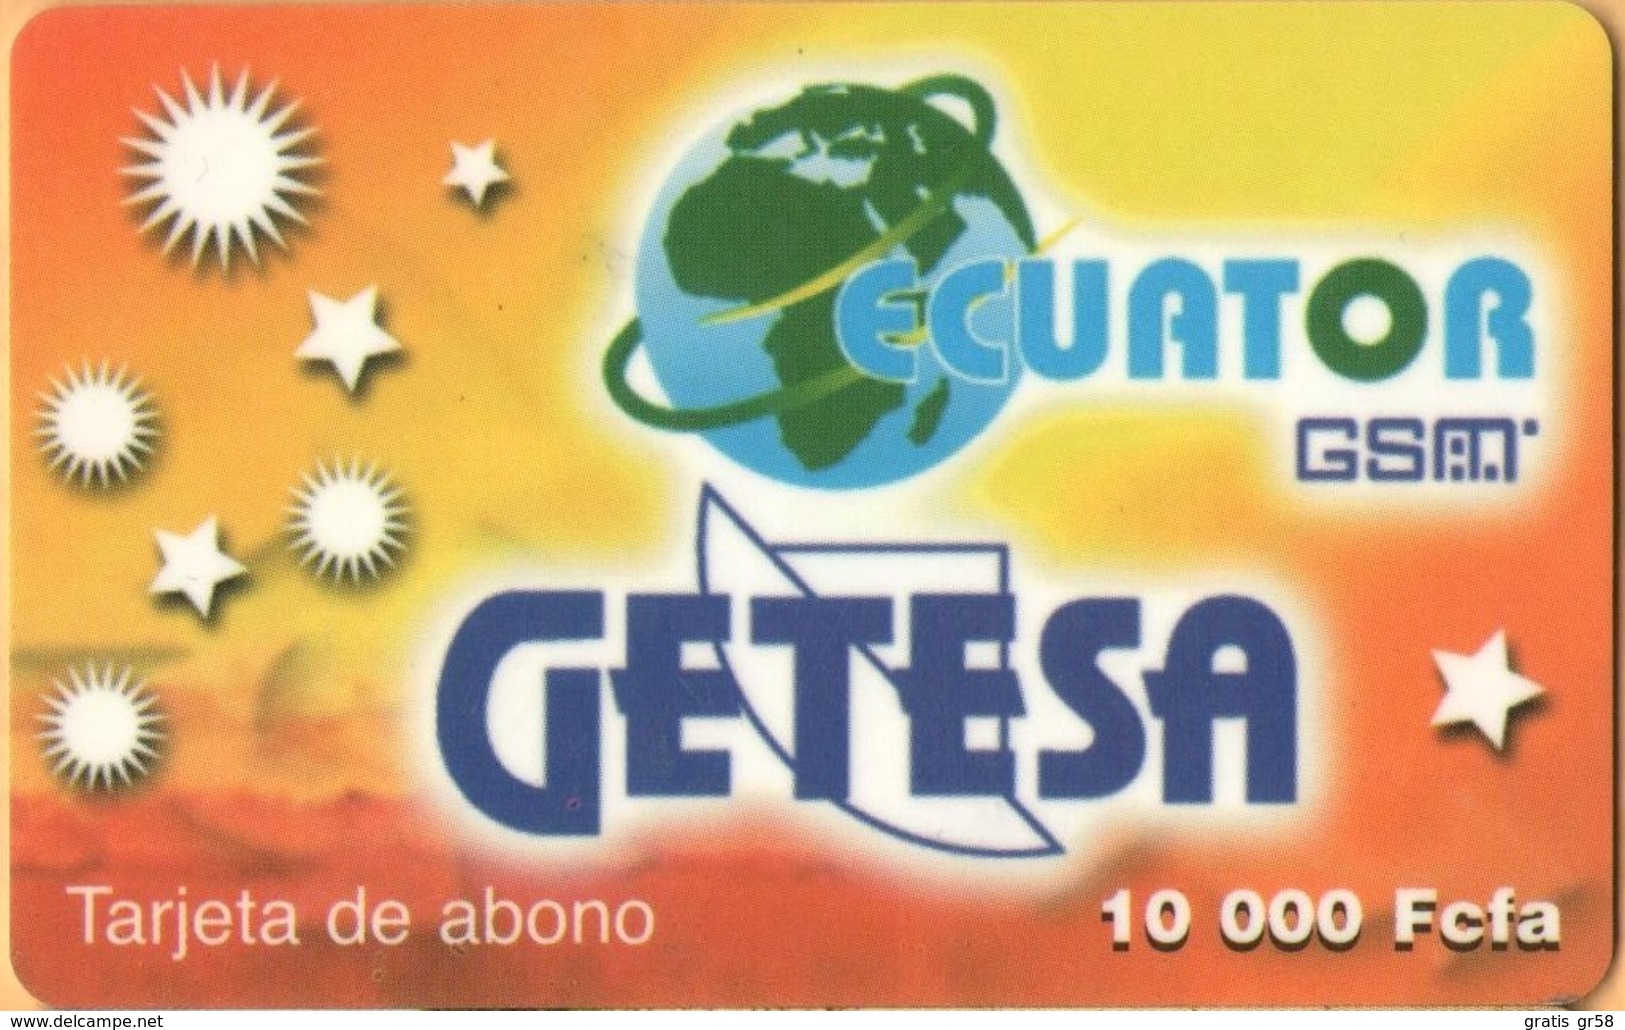 Equatorial Guinea - GQ-GET-REF-0004, GSM, Mobile Refill, Yellow – Getesa, Used - Guinea Equatoriale